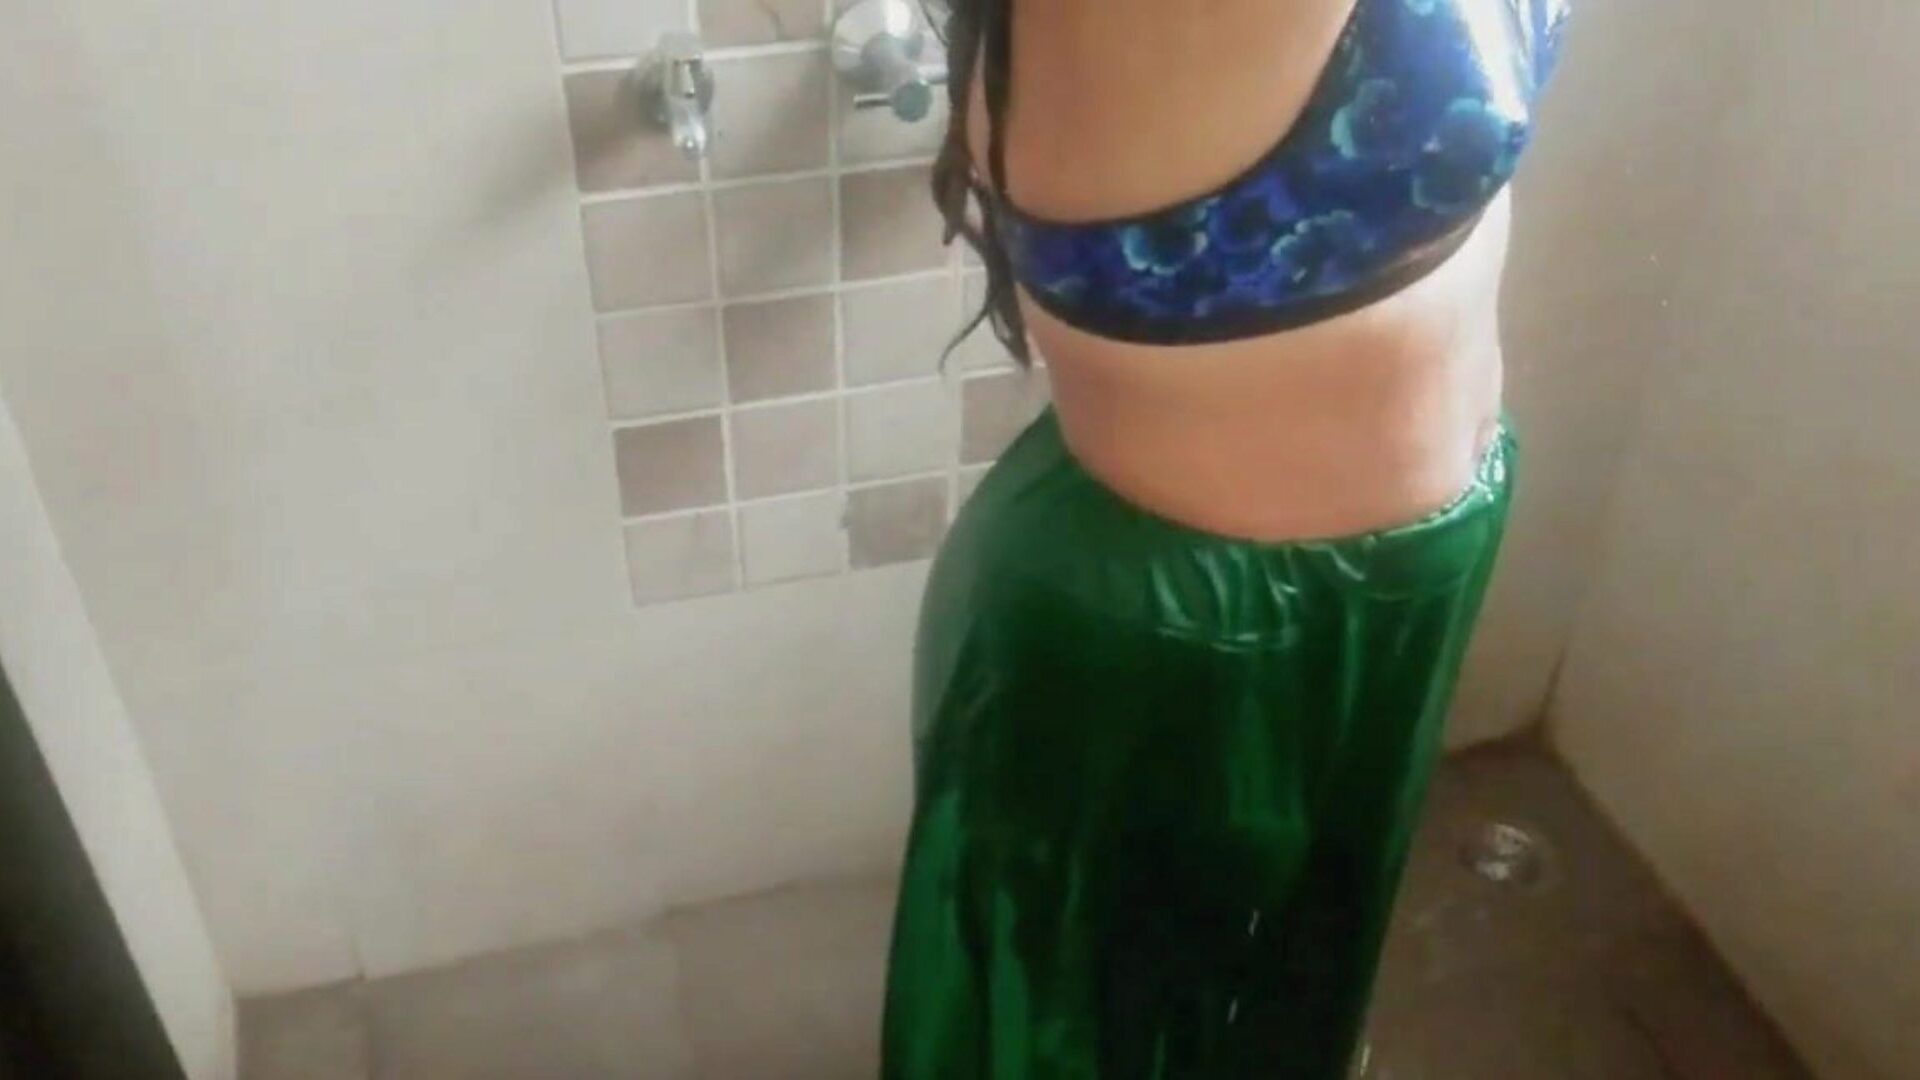 intialainen äitipuoleni kylpyhuoneen seksi, vapaa kypsä porno a2: xhamster katsella intialainen äitipuoleni kylpyhuoneen seksielokuvan kohtaus xhamsterissa, suurin hd vittu-fest -putkisivusto, jossa on paljon vapaa-ajan aasialaisia ​​aikuisia ja redtube-seksi porno videoita